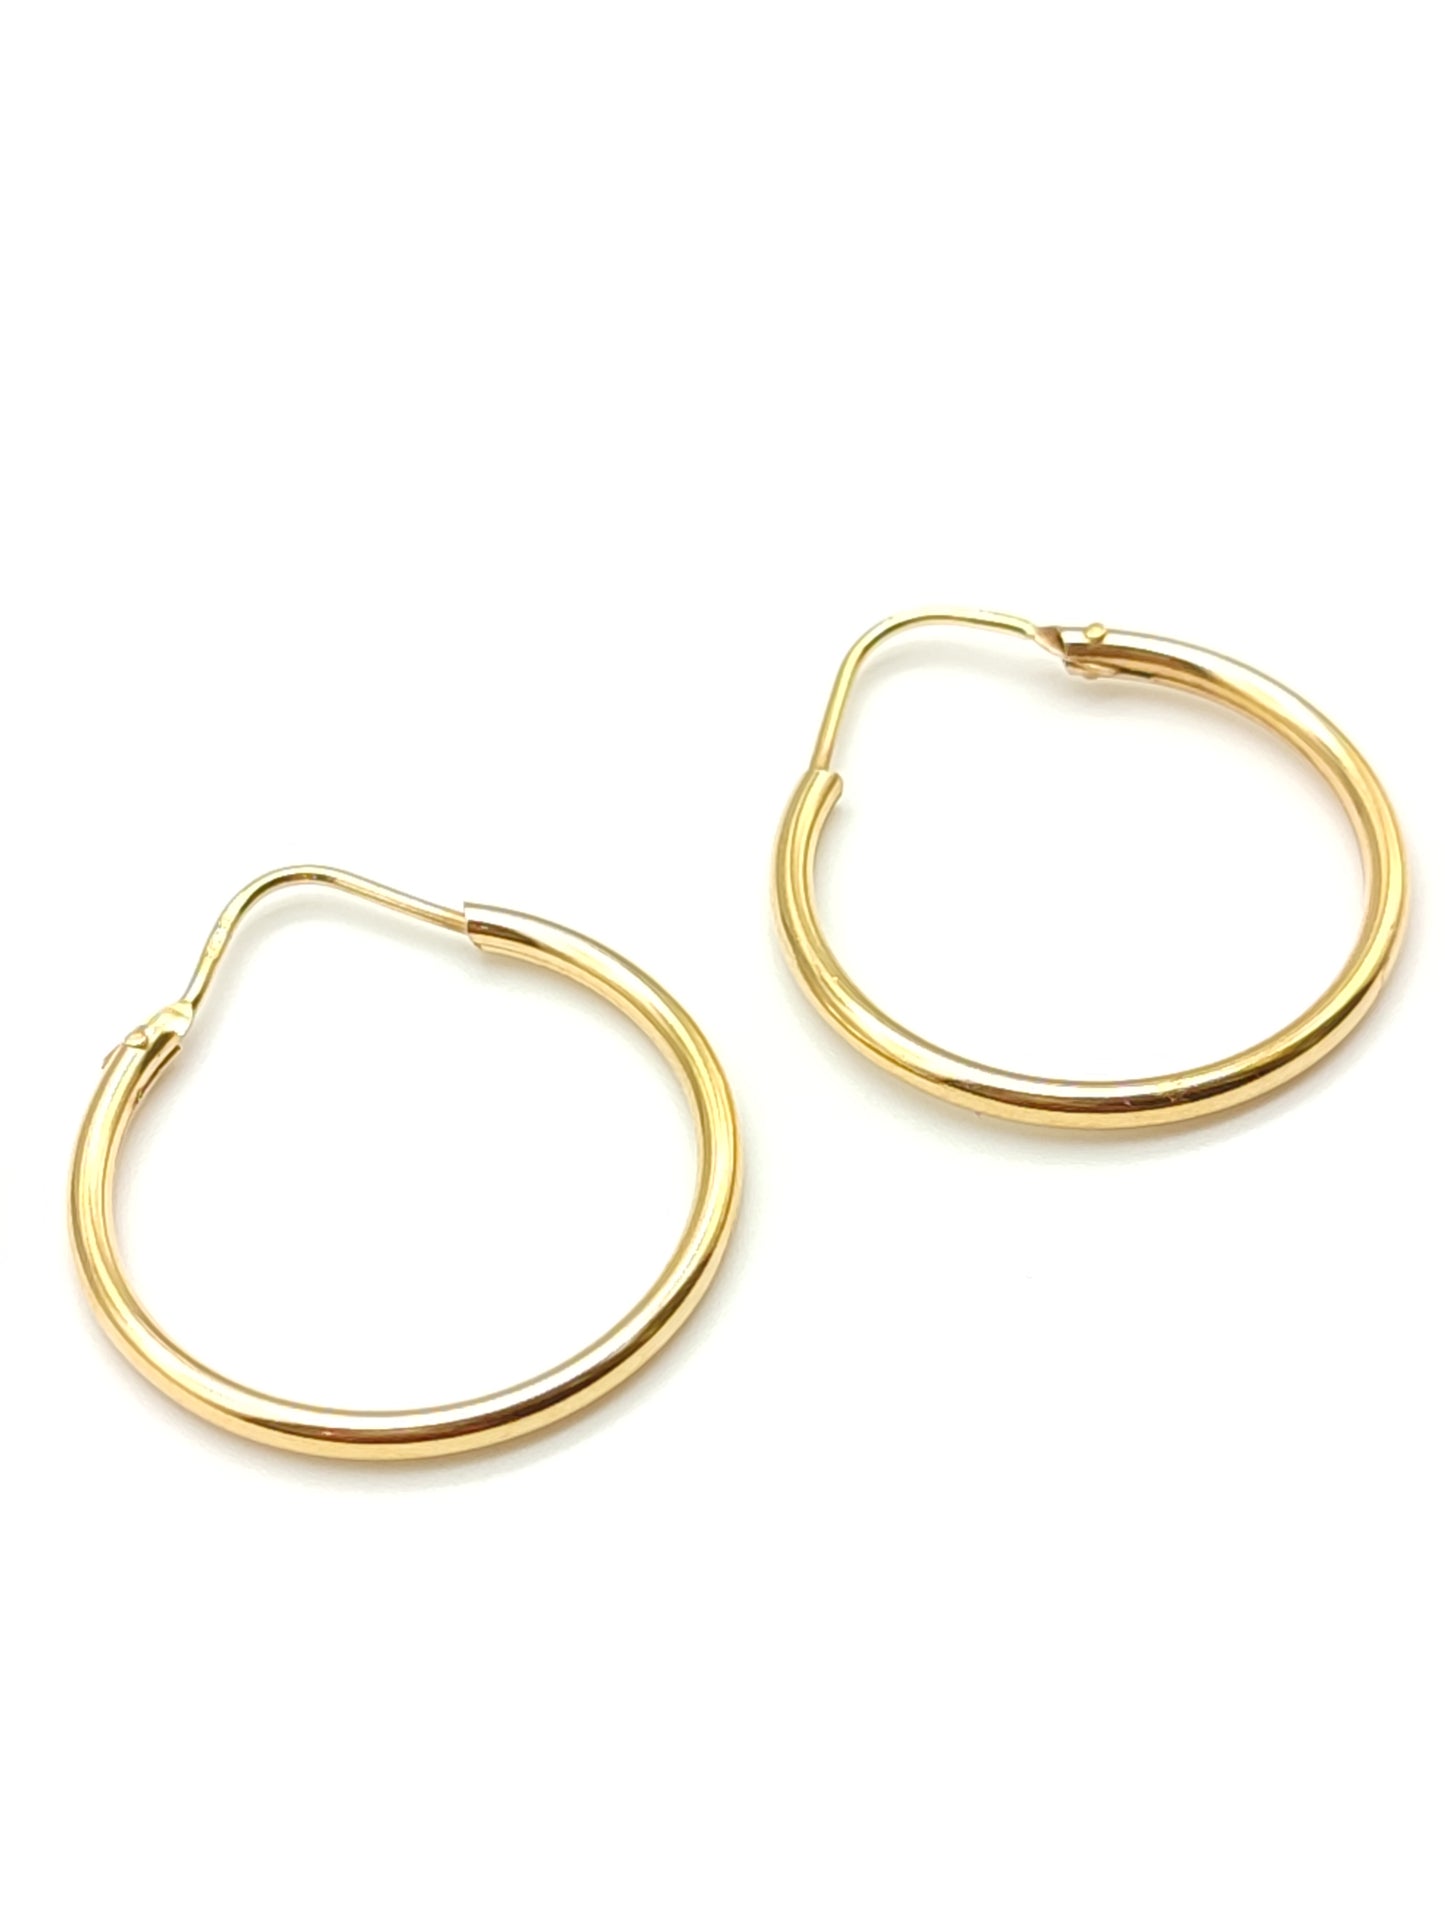 Gold hoop earrings diameter 2.5 cm